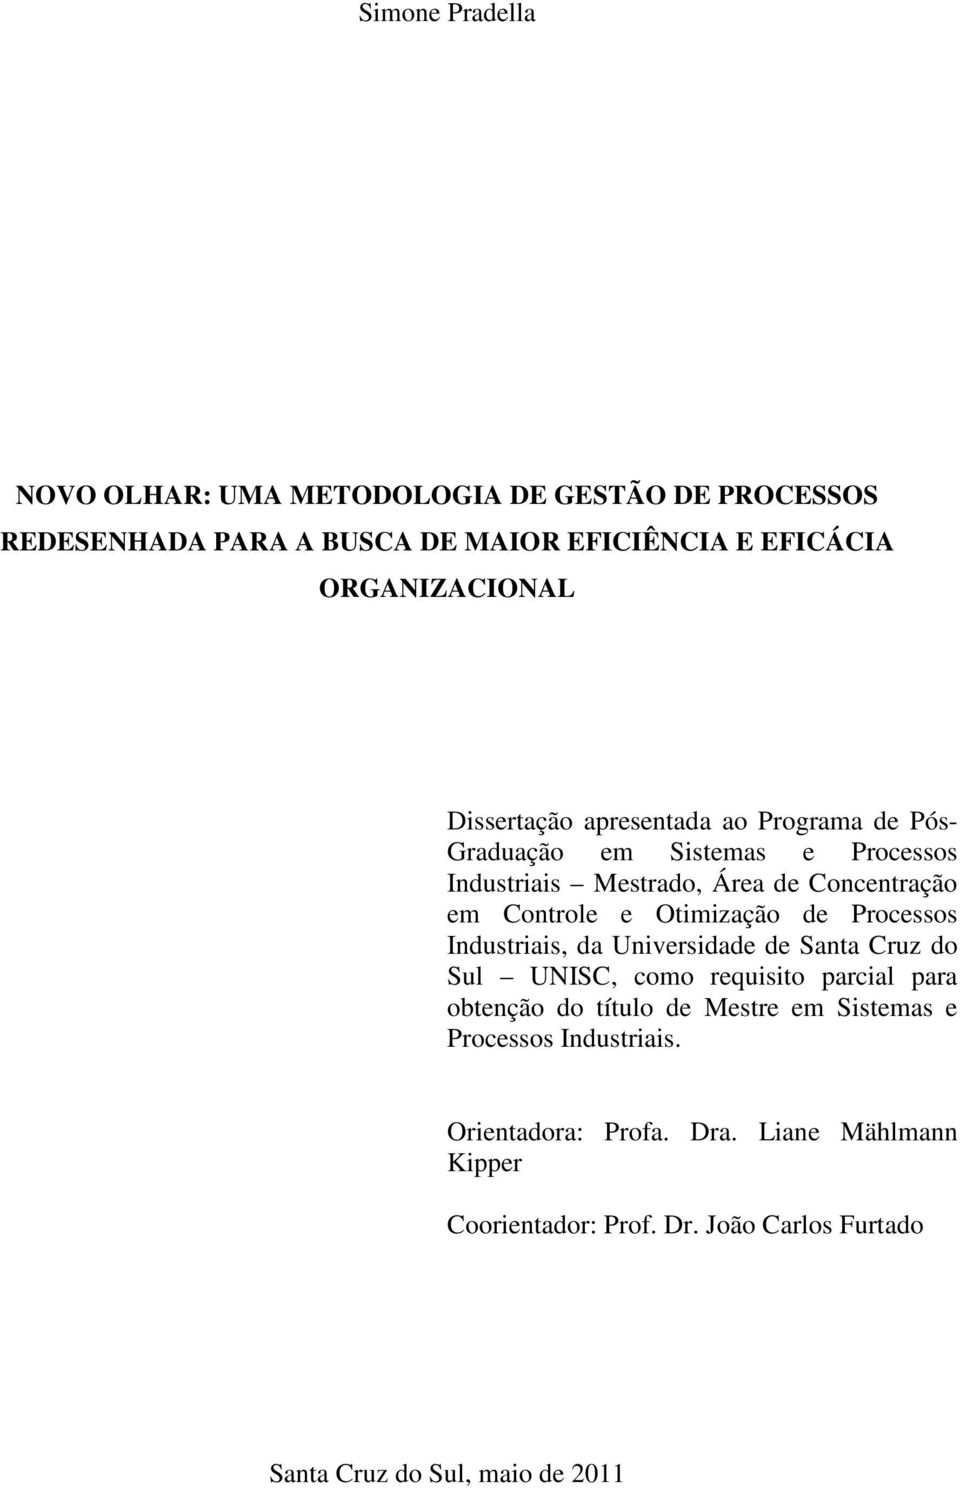 Otimização de Processos Industriais, da Universidade de Santa Cruz do Sul UNISC, como requisito parcial para obtenção do título de Mestre em